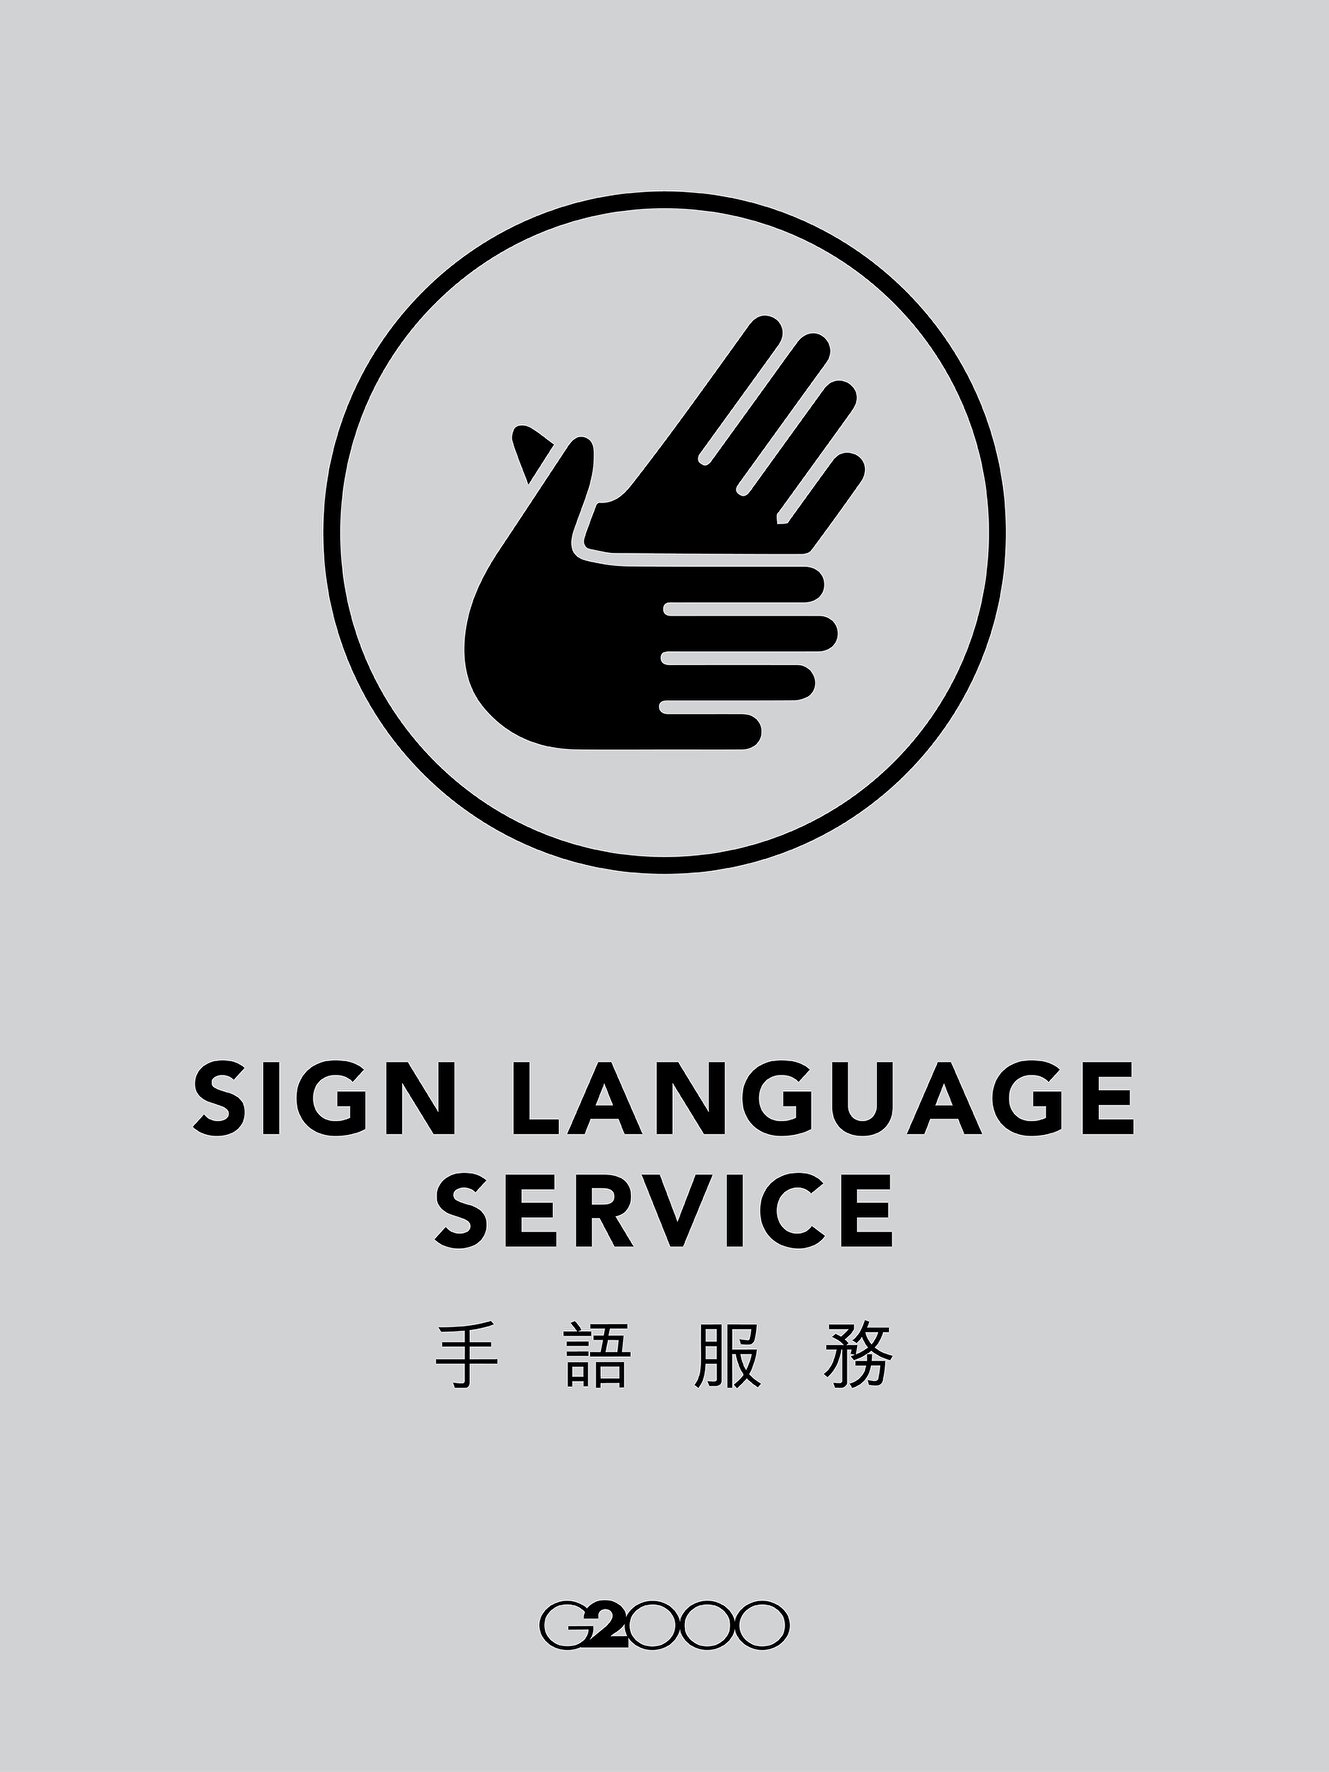 【社會共融 手語服務】 如果你放假去旅行又或者出差進出機場✈，可能會發現在G2000機場禁區分店，有幾位店員胸前掛有一個「手語服務」牌。 其實佢哋都完成 香港聾人協進會 的手語初階課程，能夠為聽障人士提供以下資訊，都唔容易㗎。... ✅基本銷售過程協助